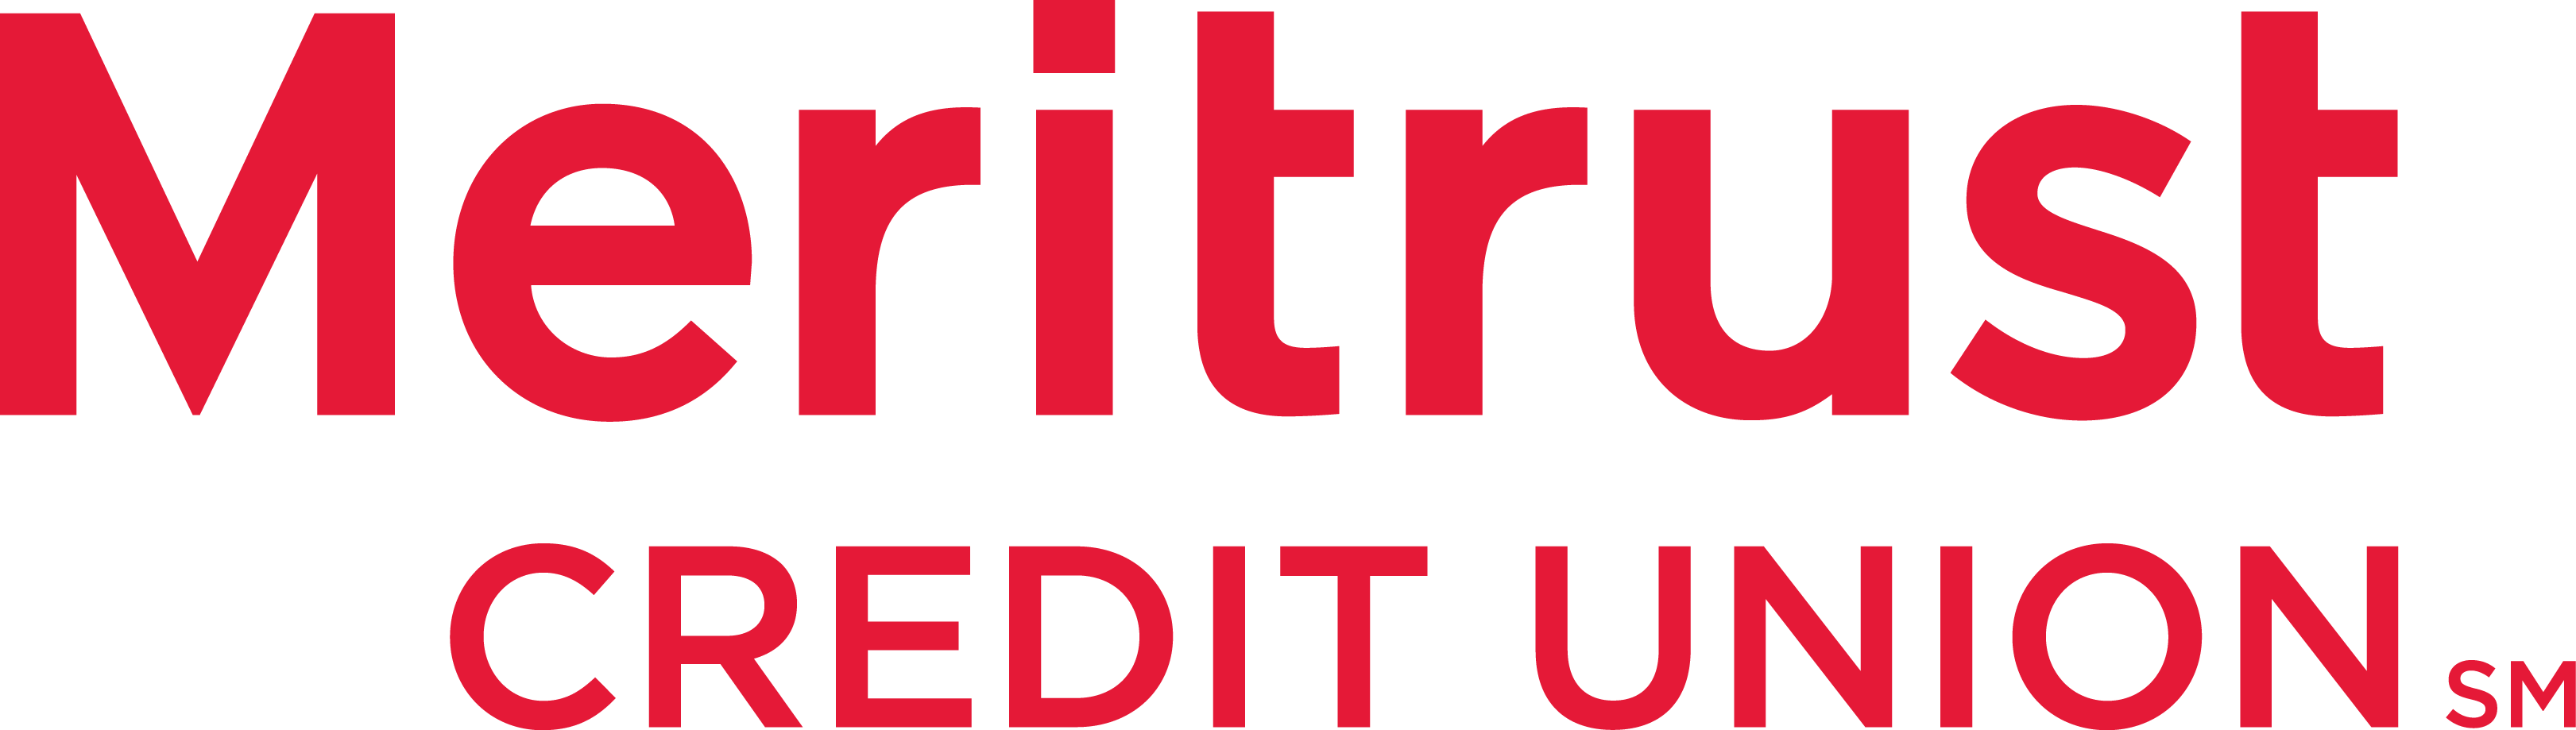 Meritrust red logo